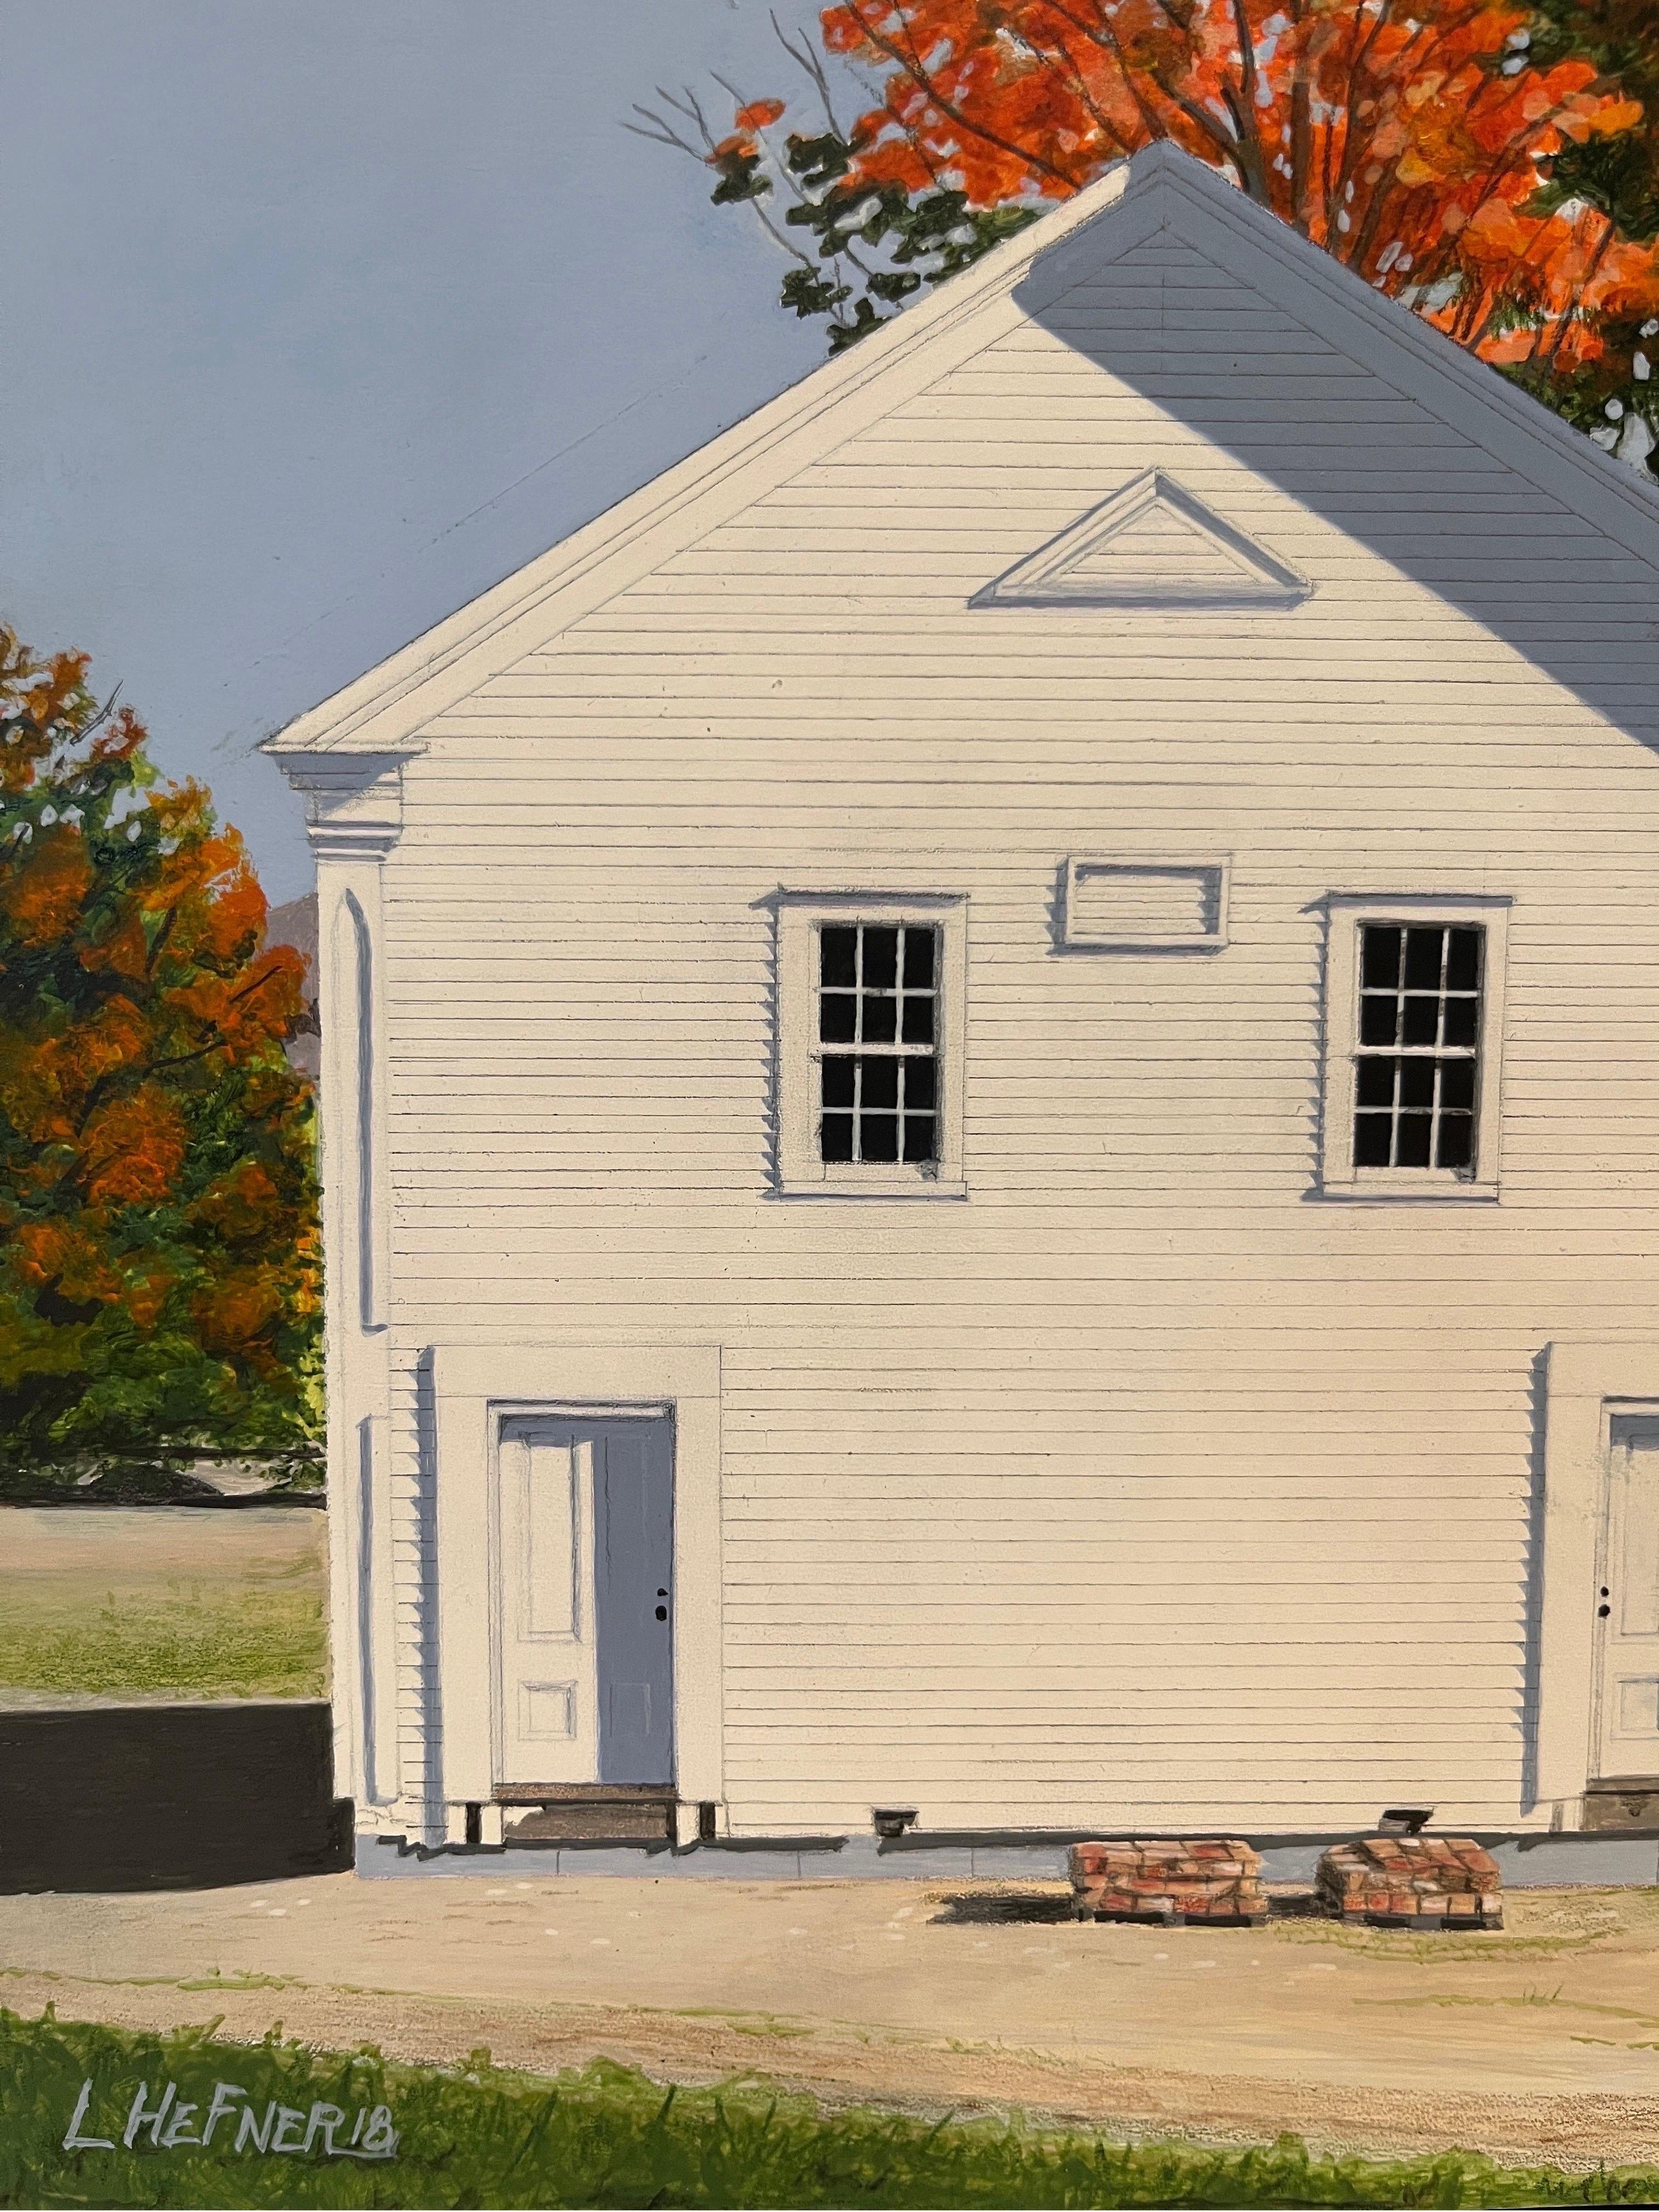 Linda Hefner est connue pour ses peintures acryliques vibrantes de granges et d'architectures historiques de la Nouvelle-Angleterre. L'amour de Mme Hefner pour l'Amérique en péril est enraciné dans le passé, y compris le sien : elle a passé les